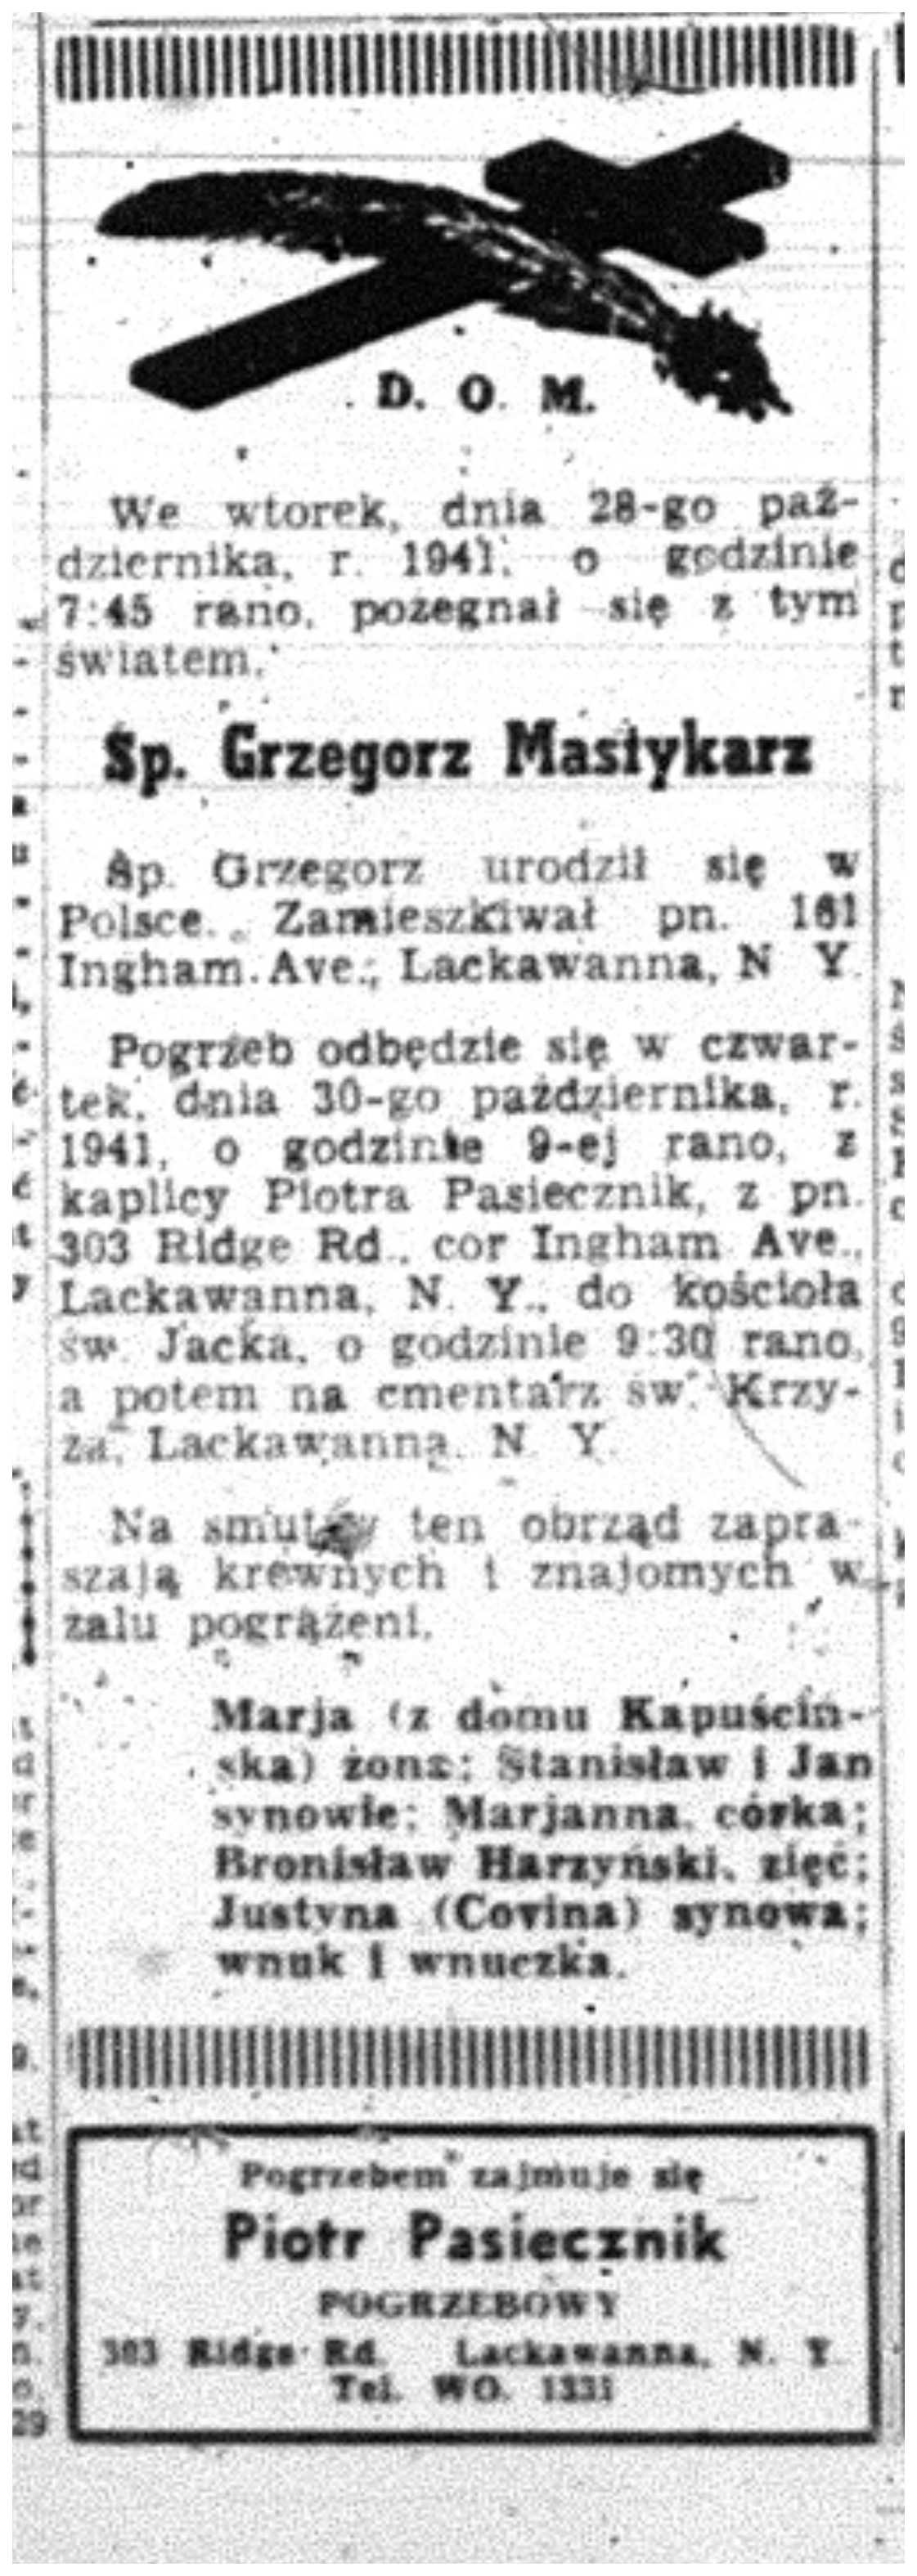 1941 Grzegorz Mastykarz 29 Oct Dniennik